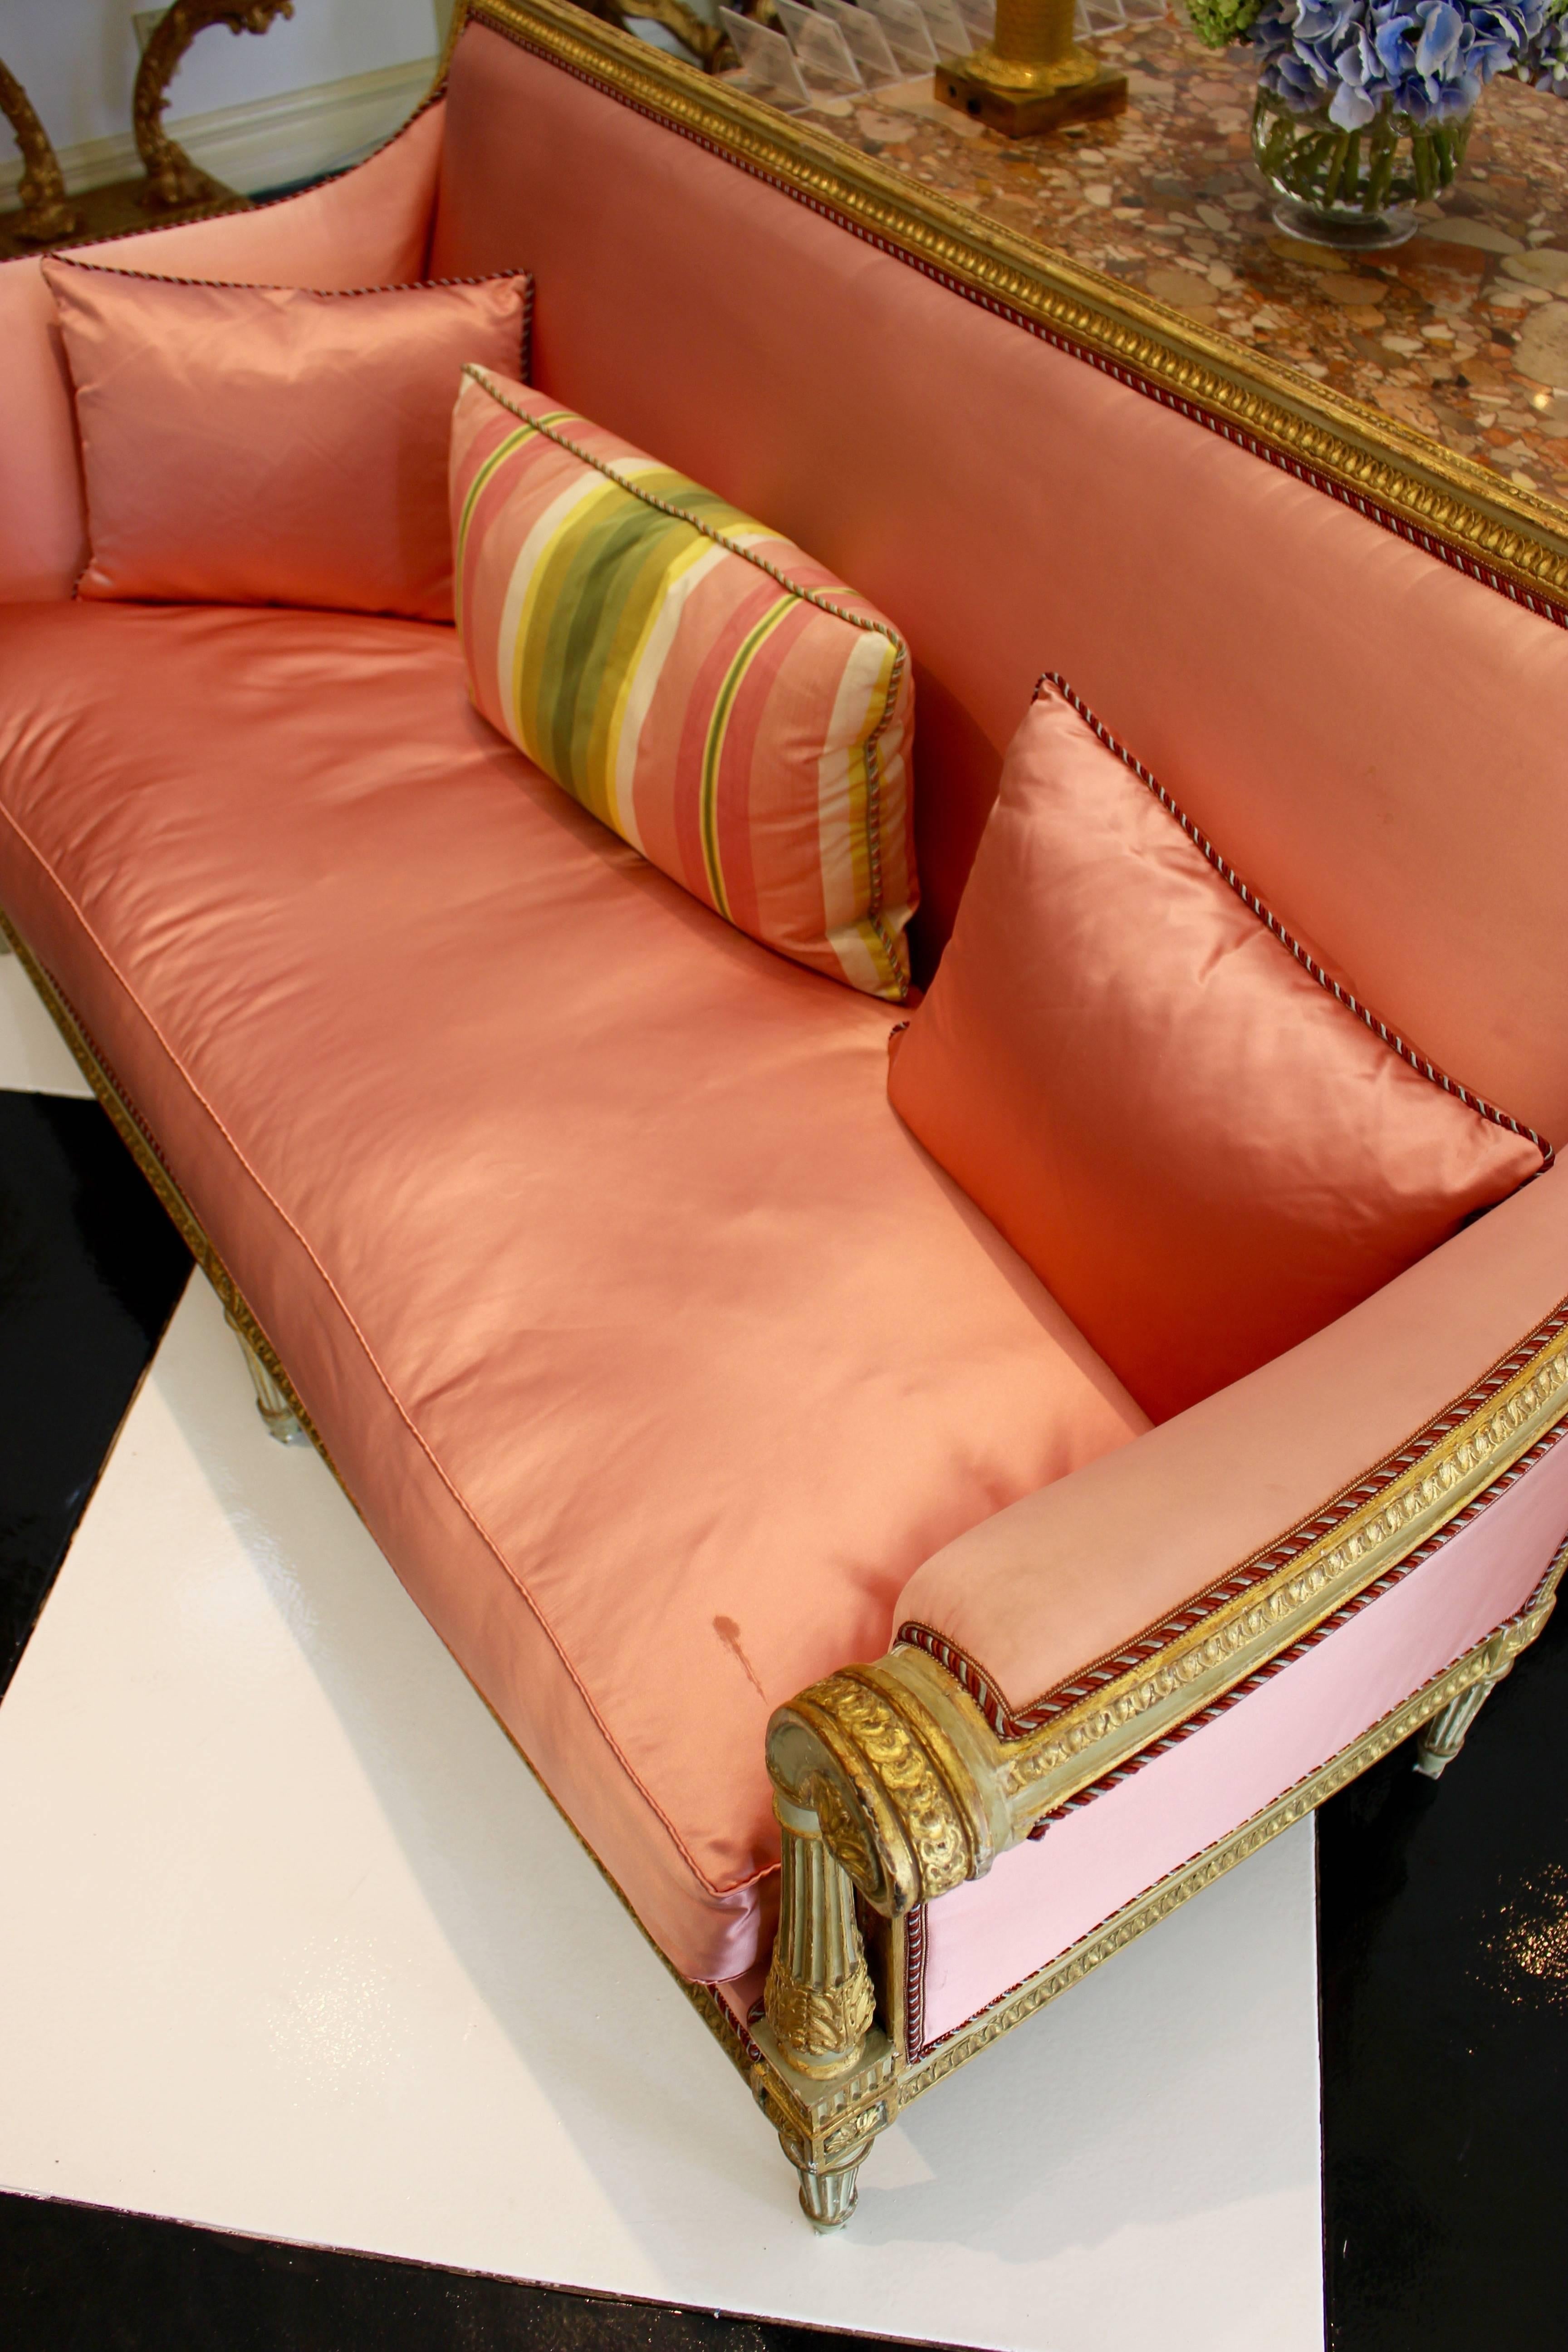 Canapé d'époque Louis XVI peint et doré à la feuille, datant de la fin du XVIIIe siècle, avec un dossier rectangulaire, des bras à enroulements, des pieds cannelés et un profond rembourrage de couleur cantaloup. Ce canapé français présente une